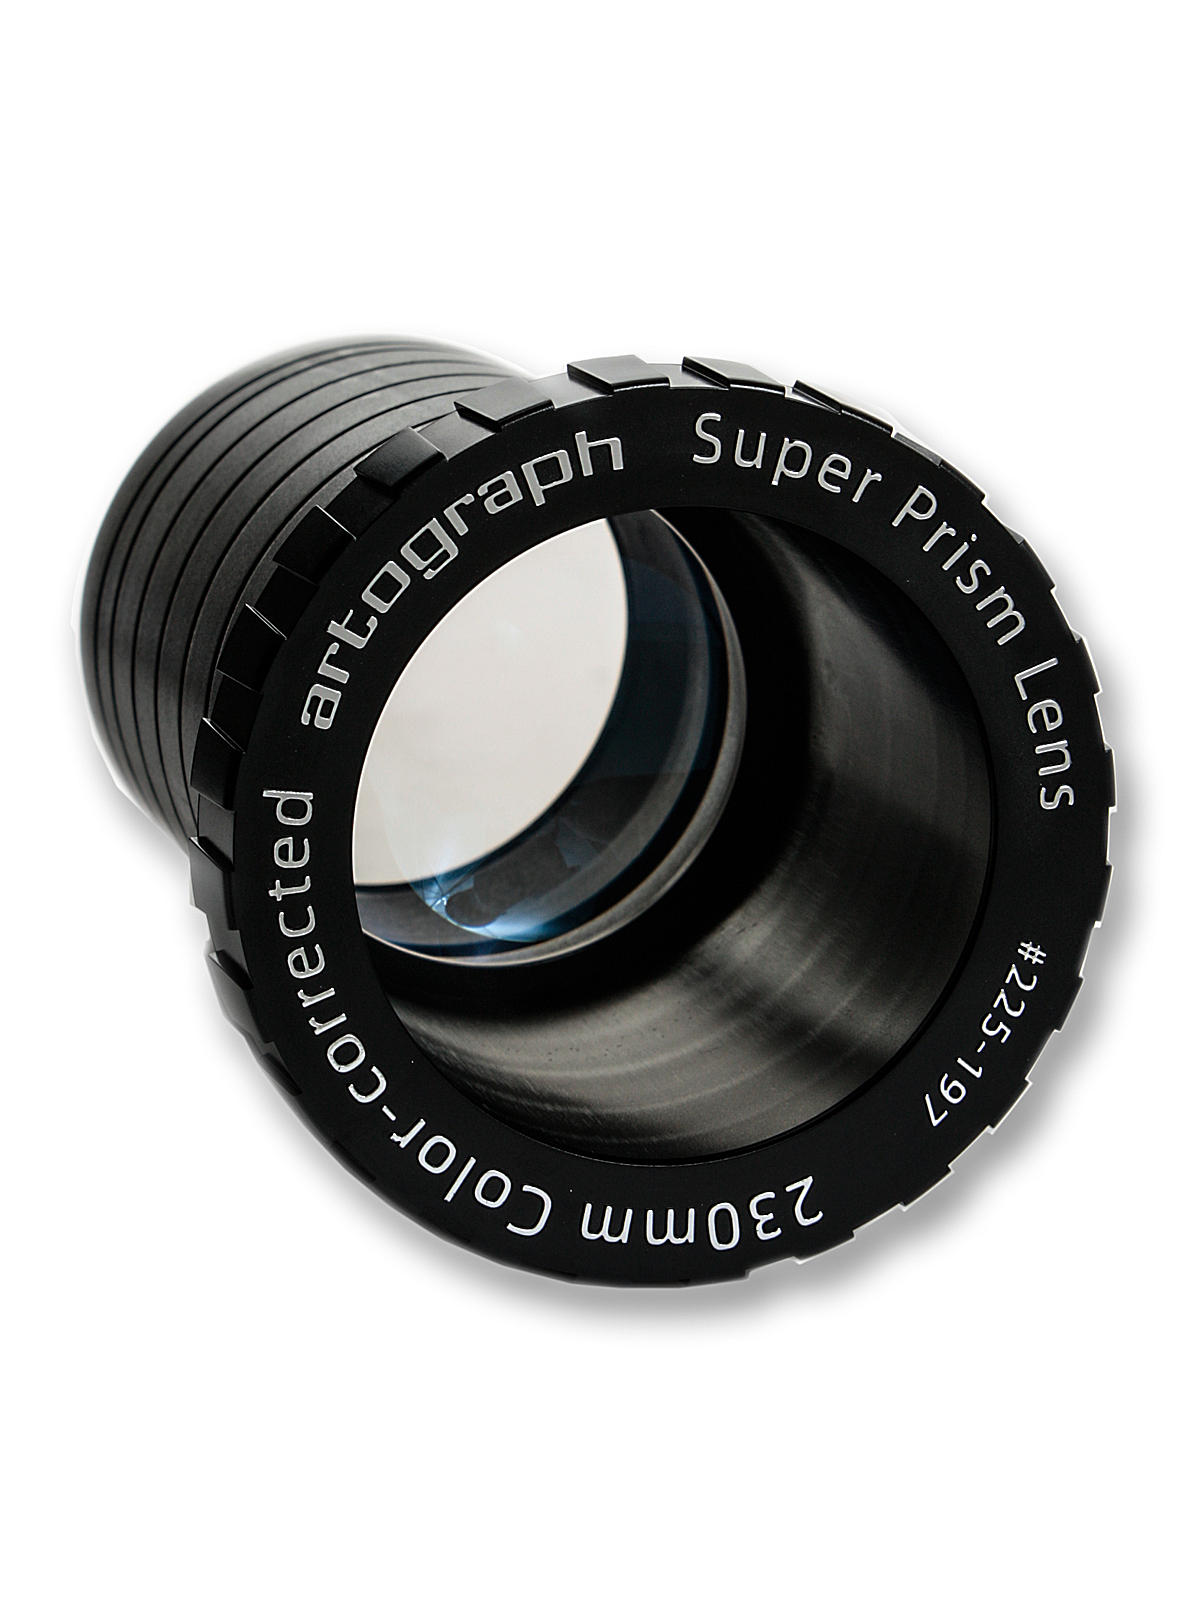 Prism Super Lens Prism Super Lens